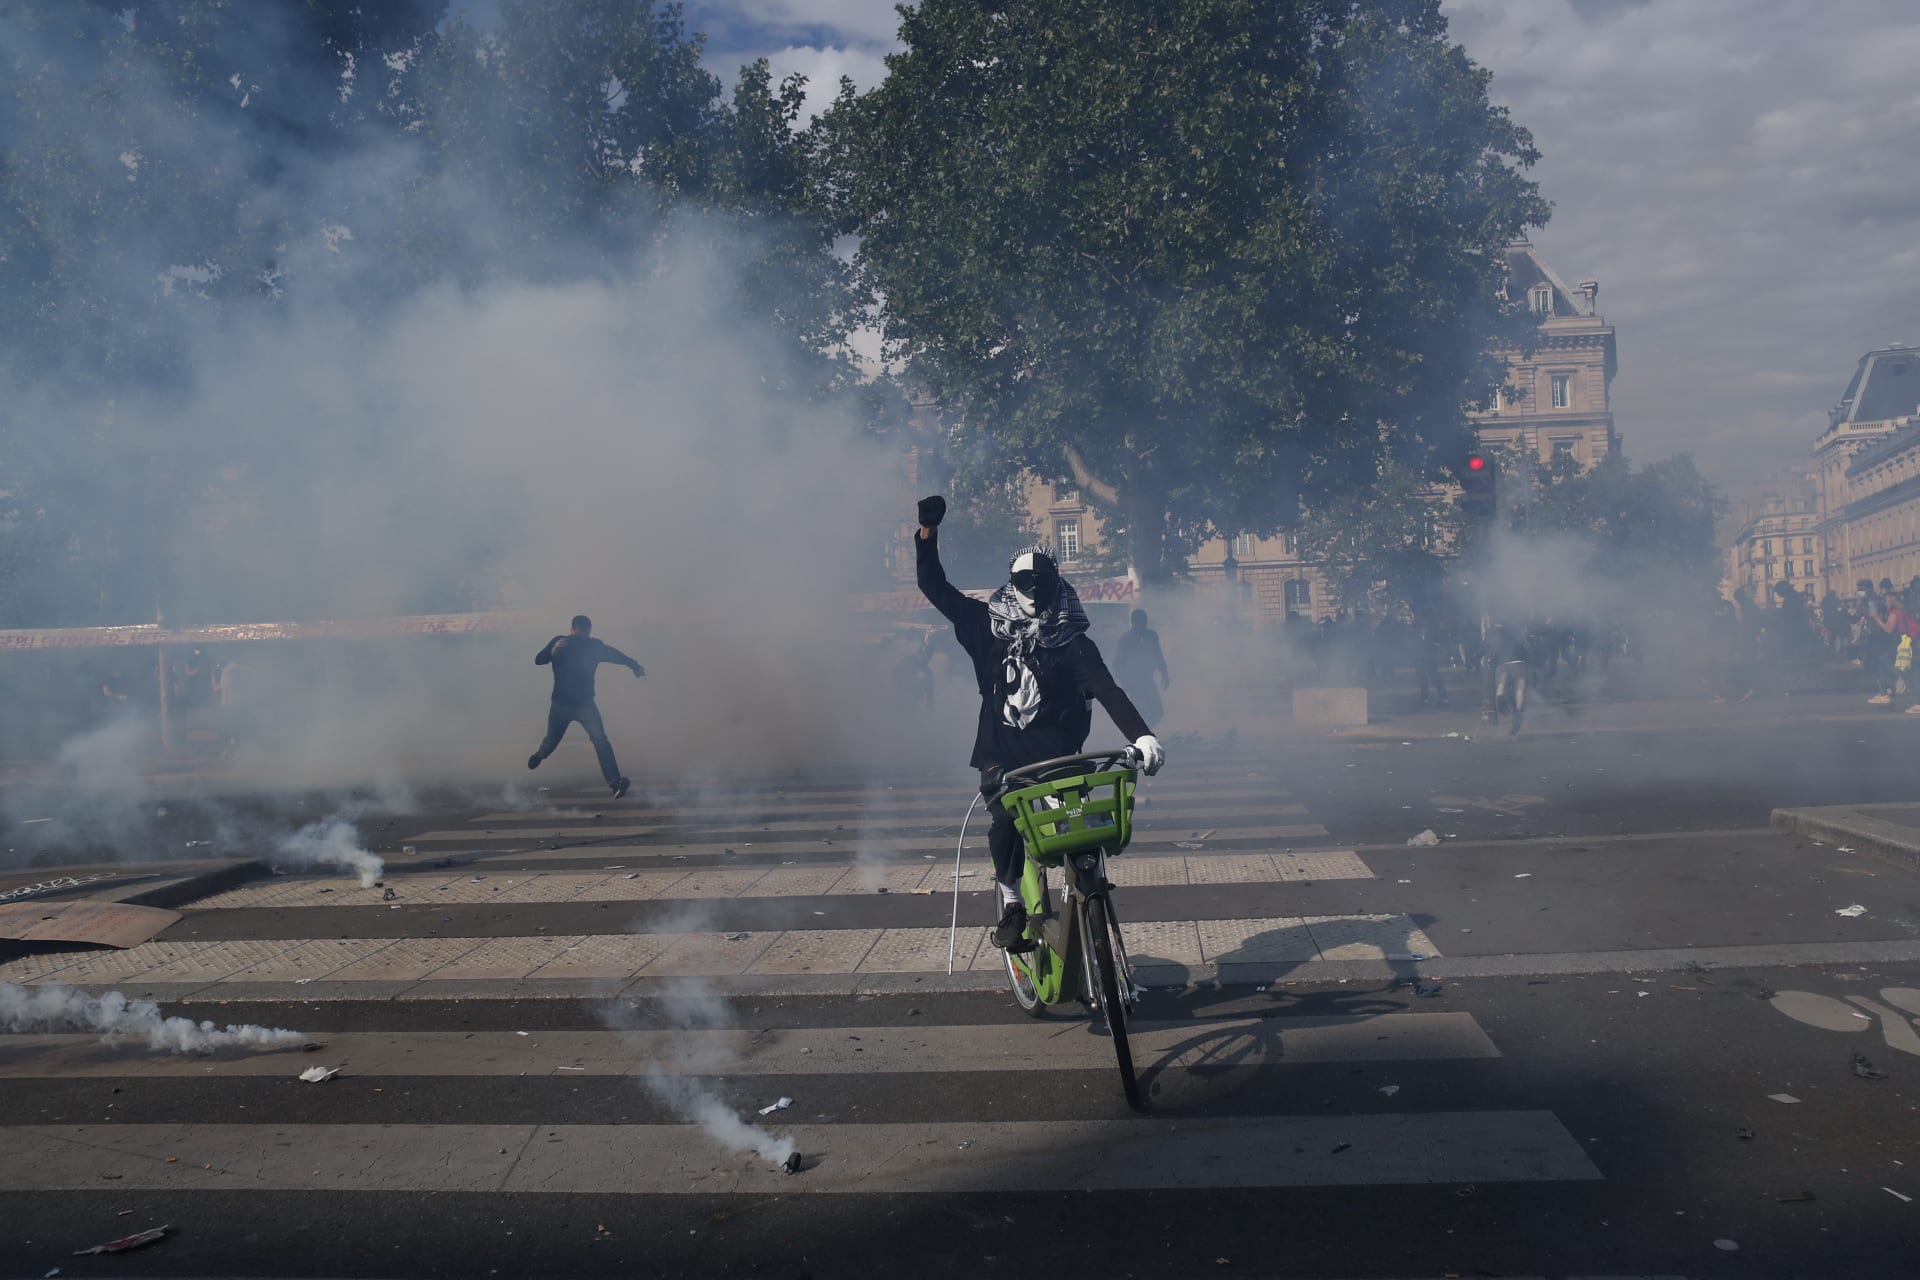 Policie na demonstranty v Paříži použila slzný plyn.